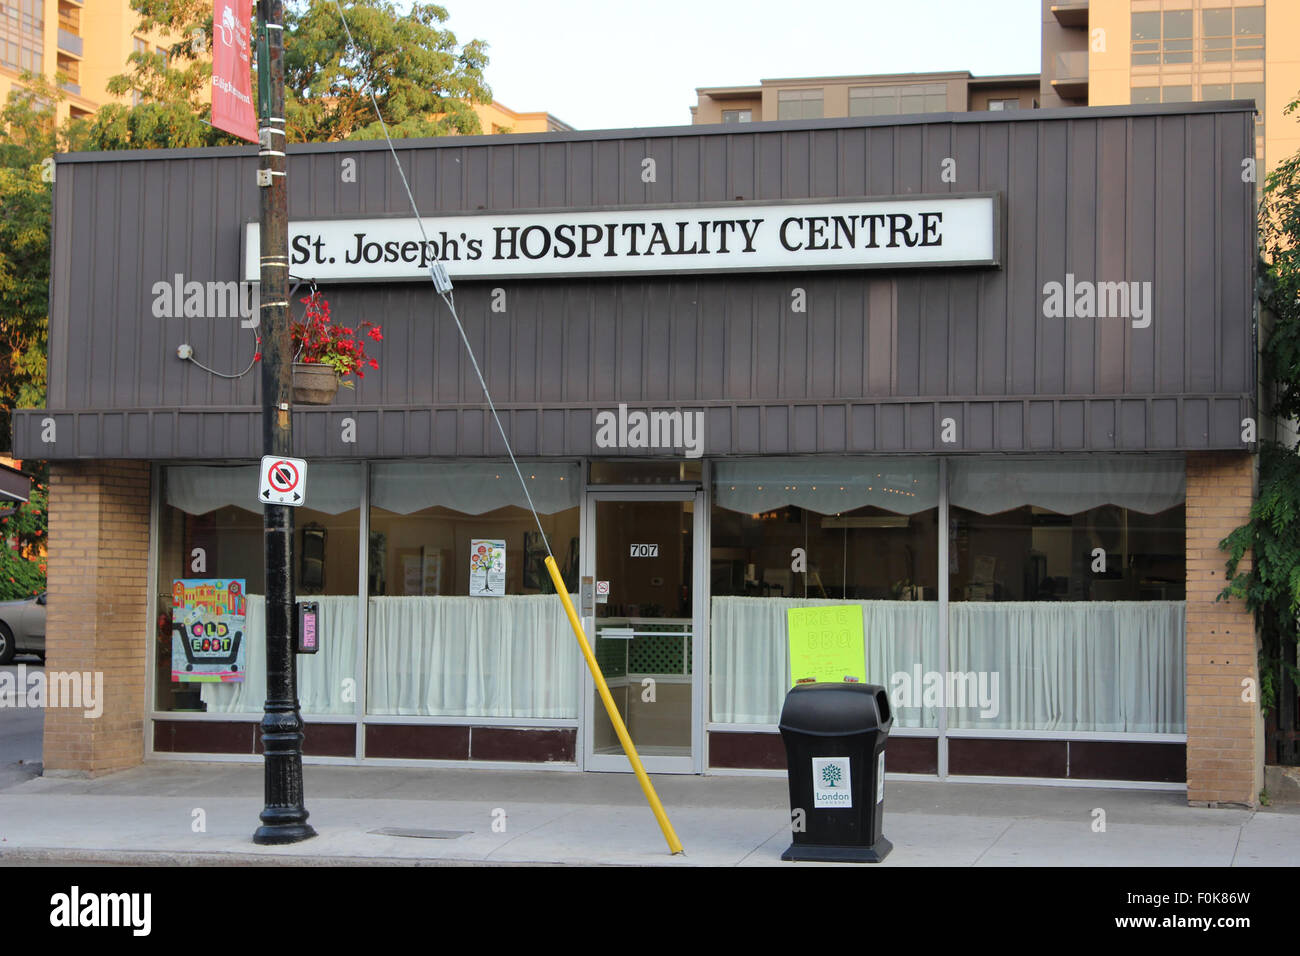 St. Joseph's Hospitality Centre - 707 Dundas St. E. St Joseph's Hospitality Centre - 707 Dundas St E Stock Photo